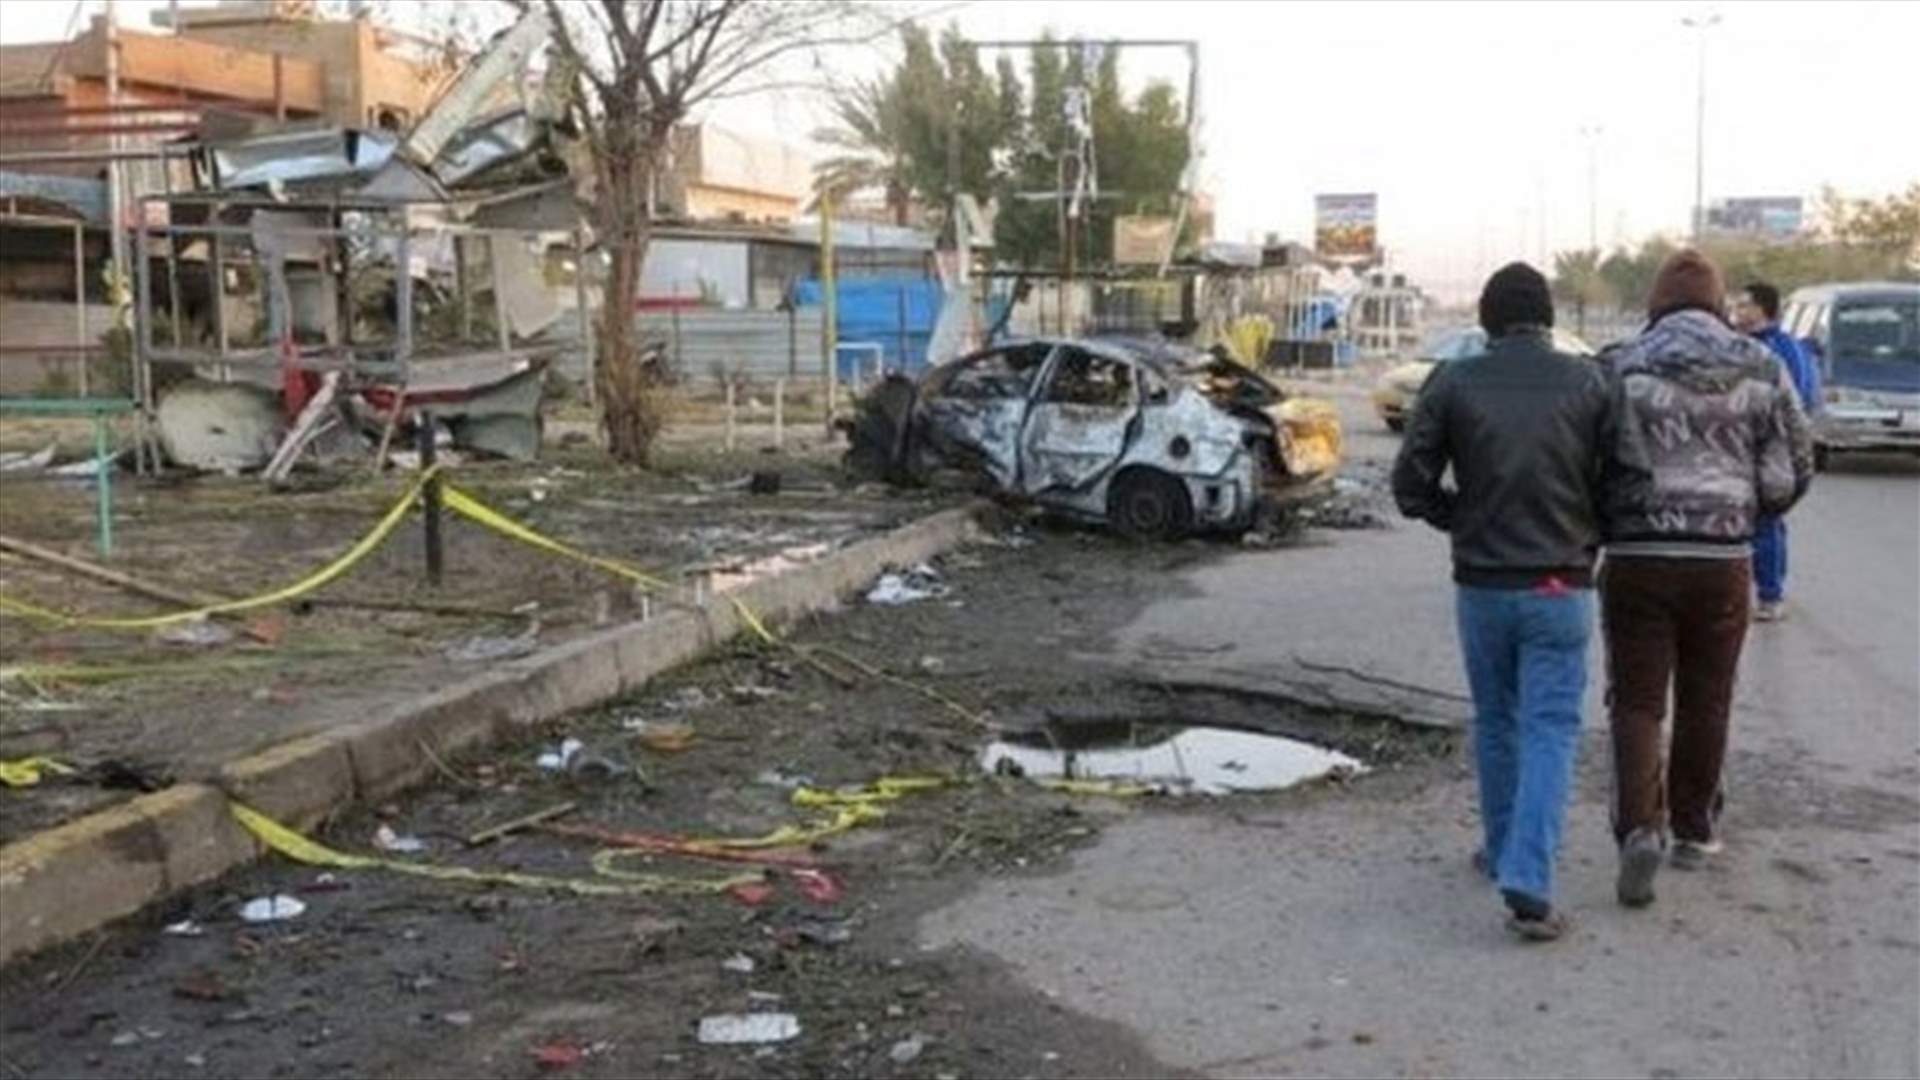 Baghdad car bomb kills at least 18, wounds about 50 - medics